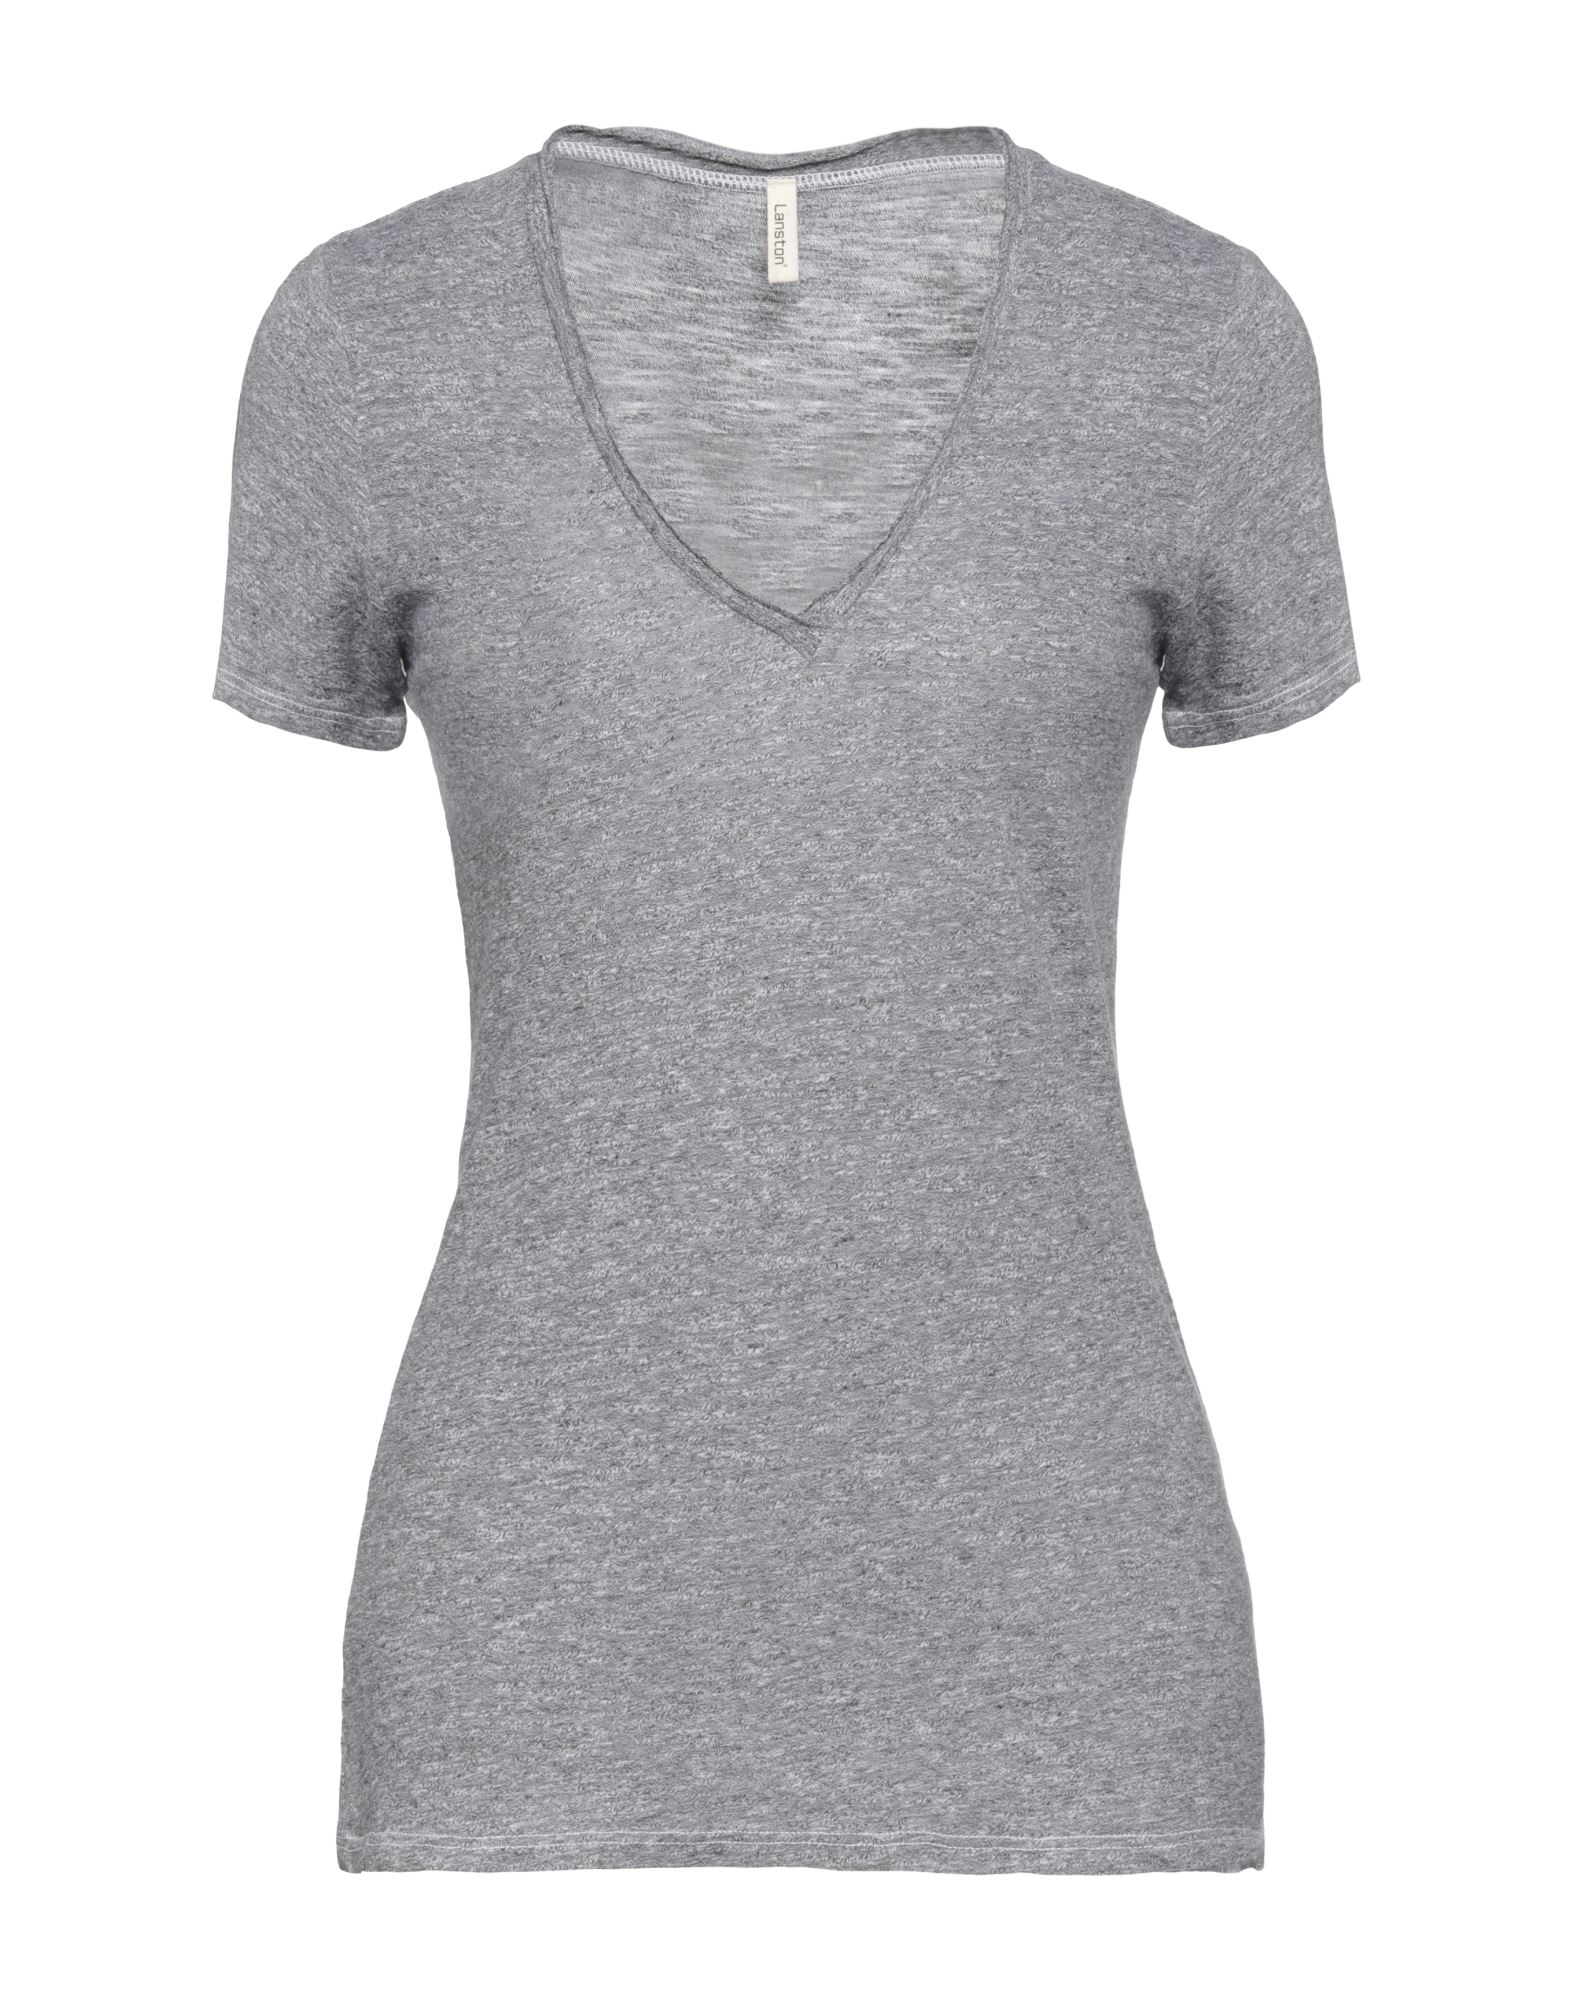 Lanston T-shirts In Grey